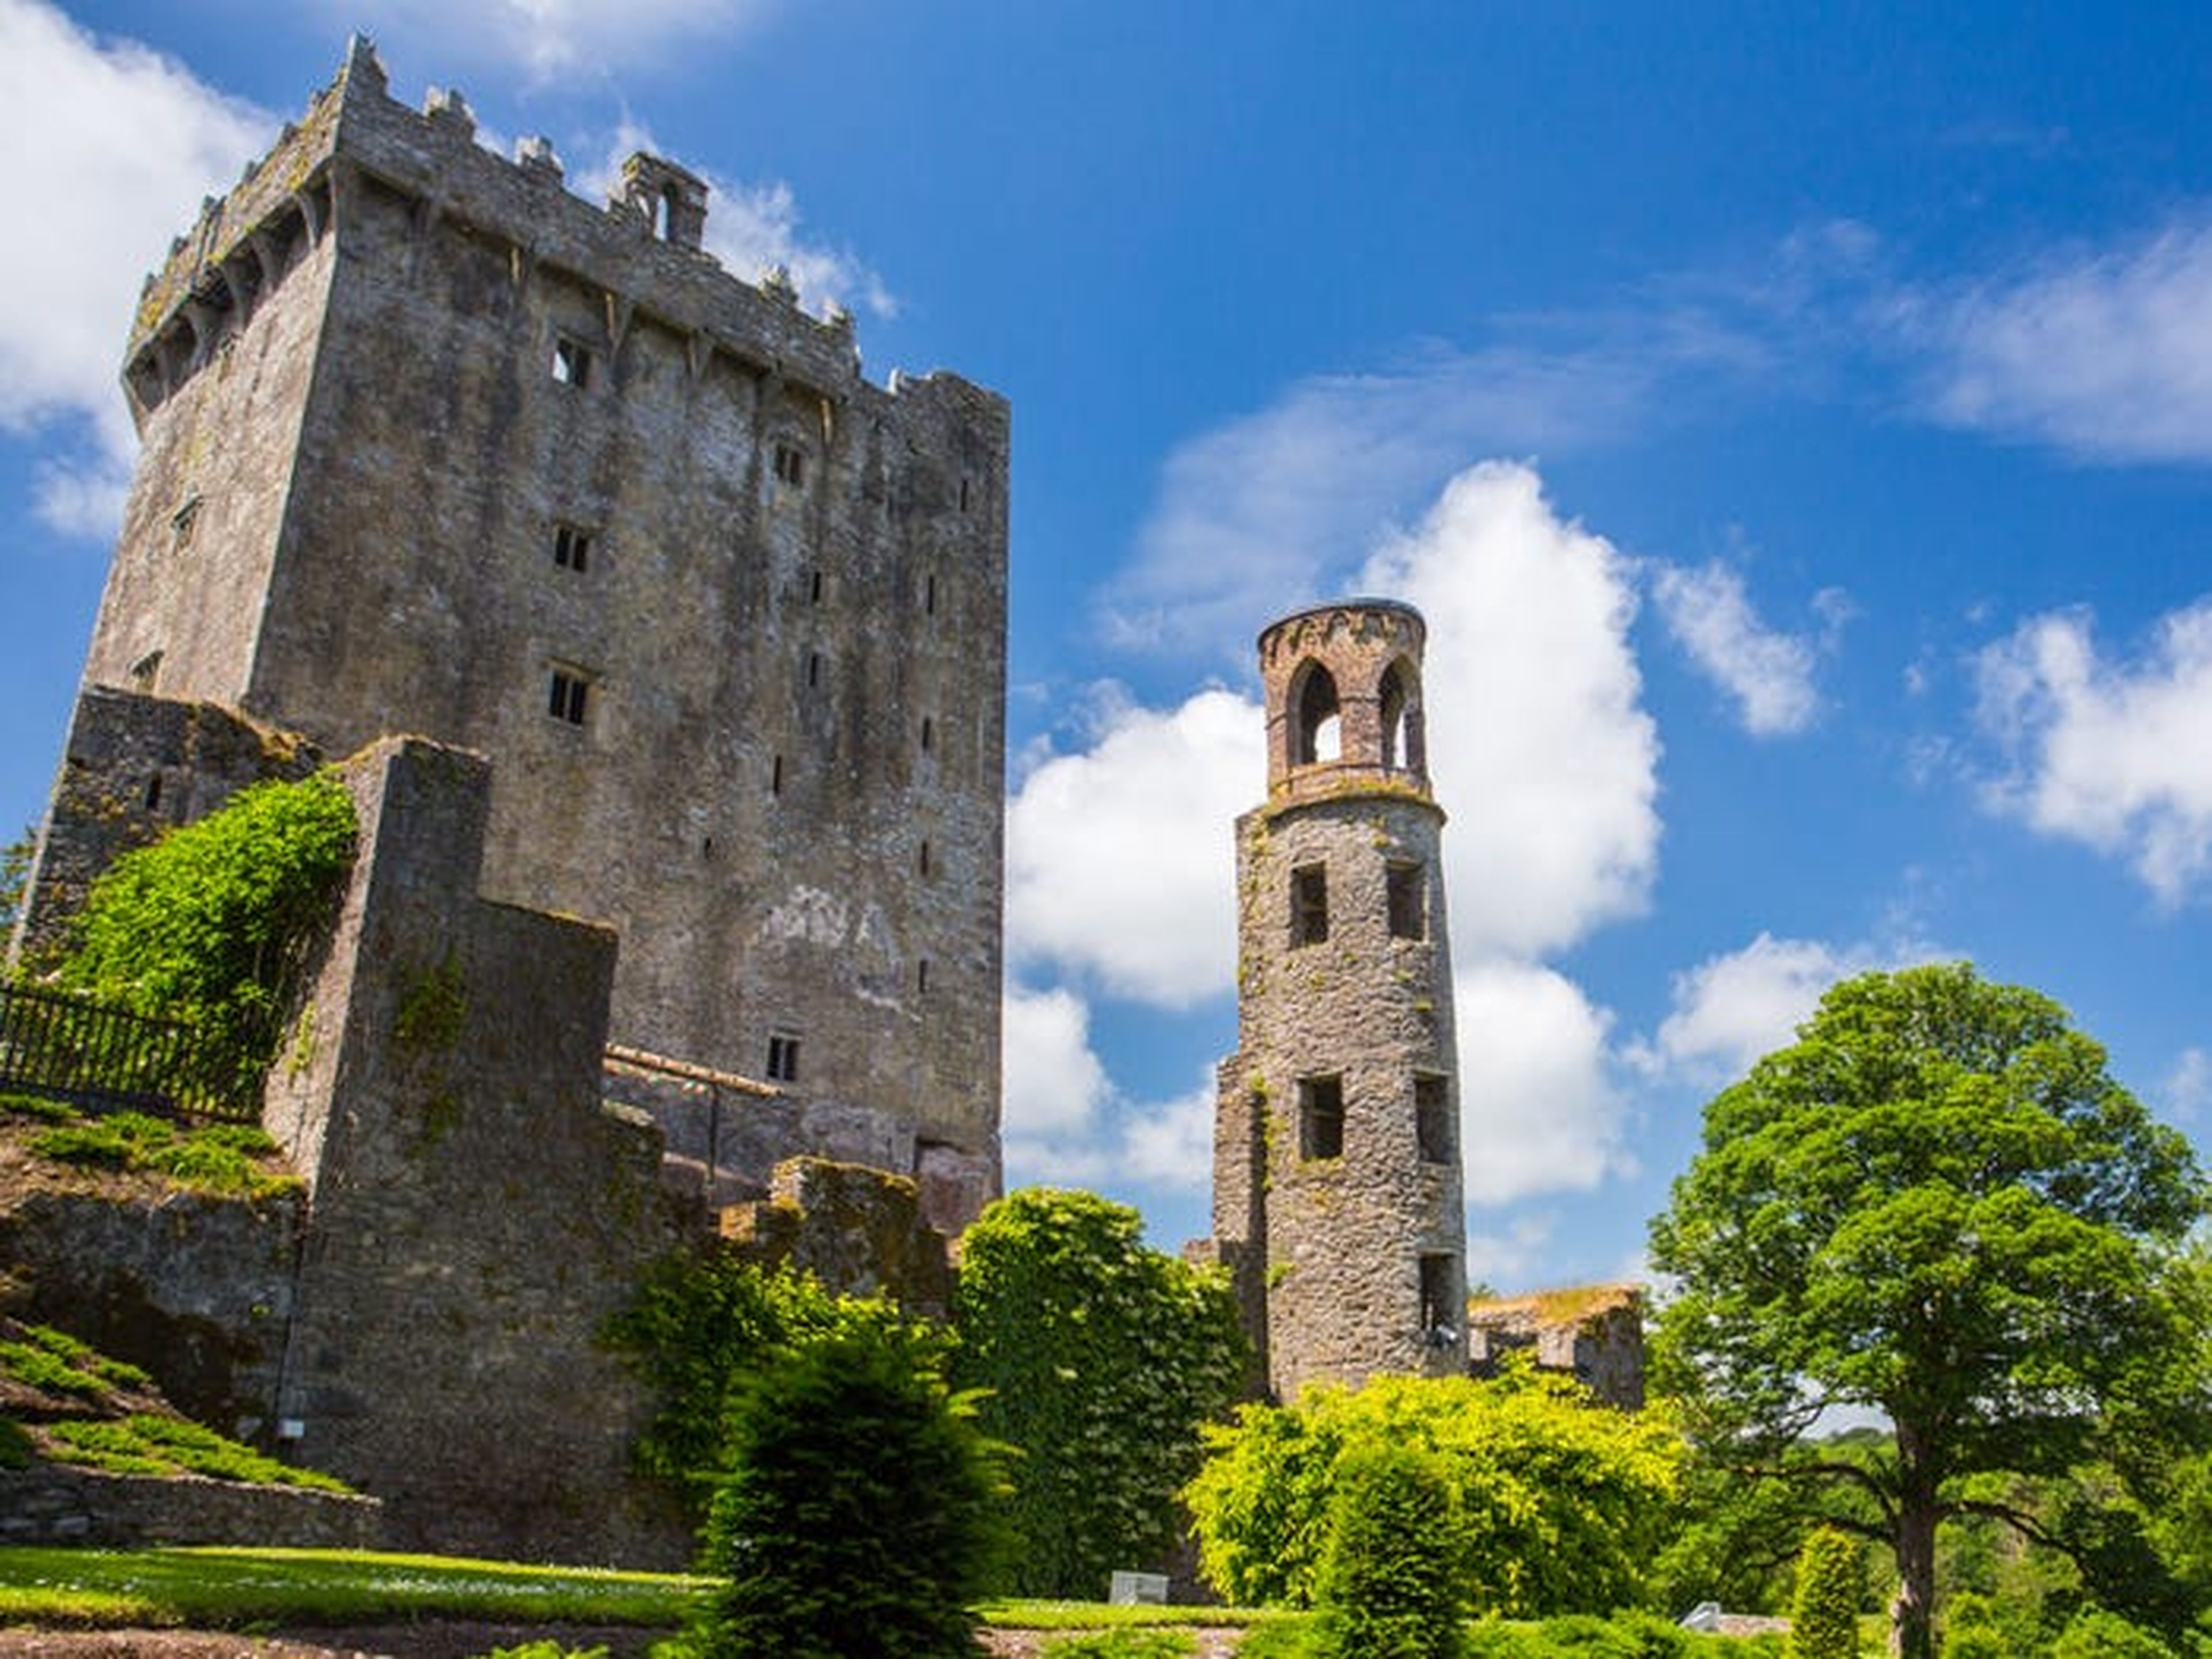 Este castillo medieval es una de las atracciones turísticas más solicitadas de Irlanda.